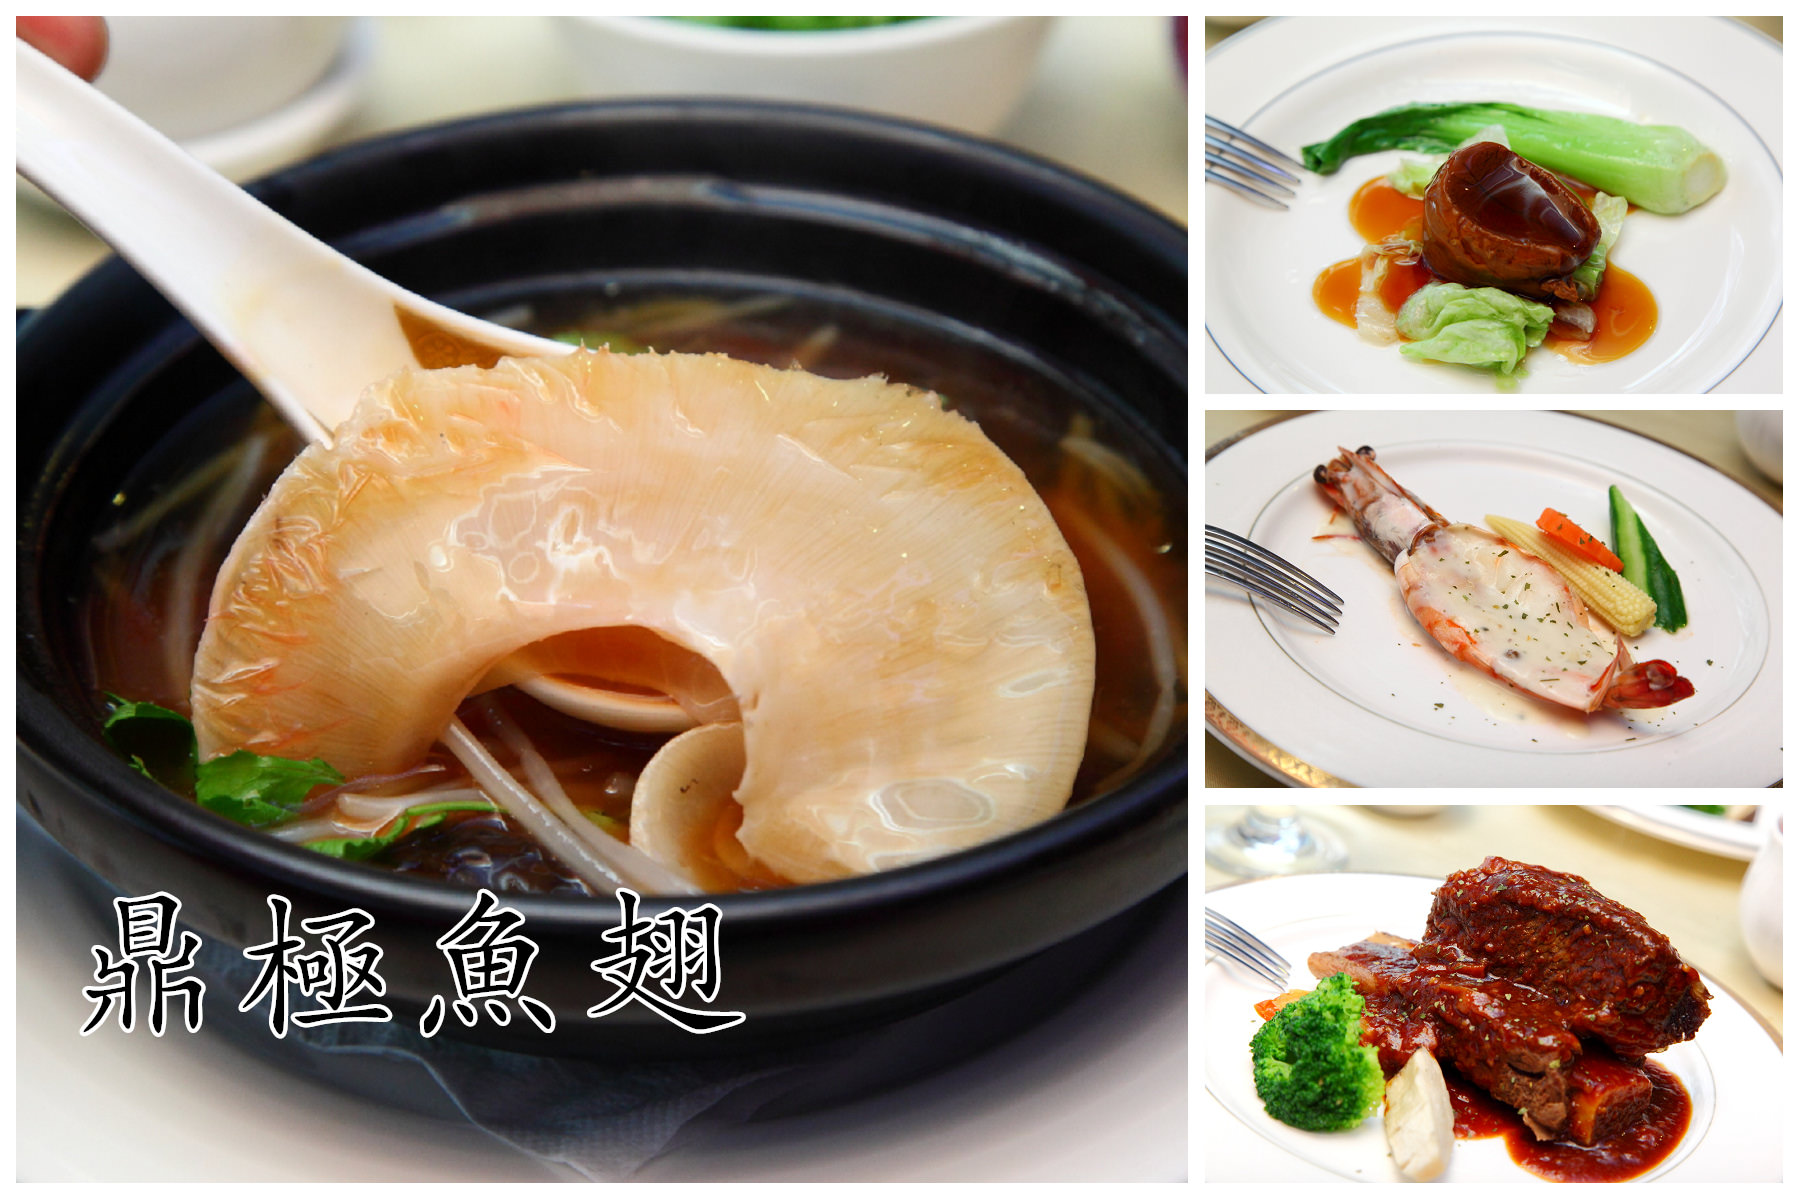 中山區魚翅餐廳,台北頂級餐廳,林森北路魚翅餐廳,邀稿,台北魚翅餐廳